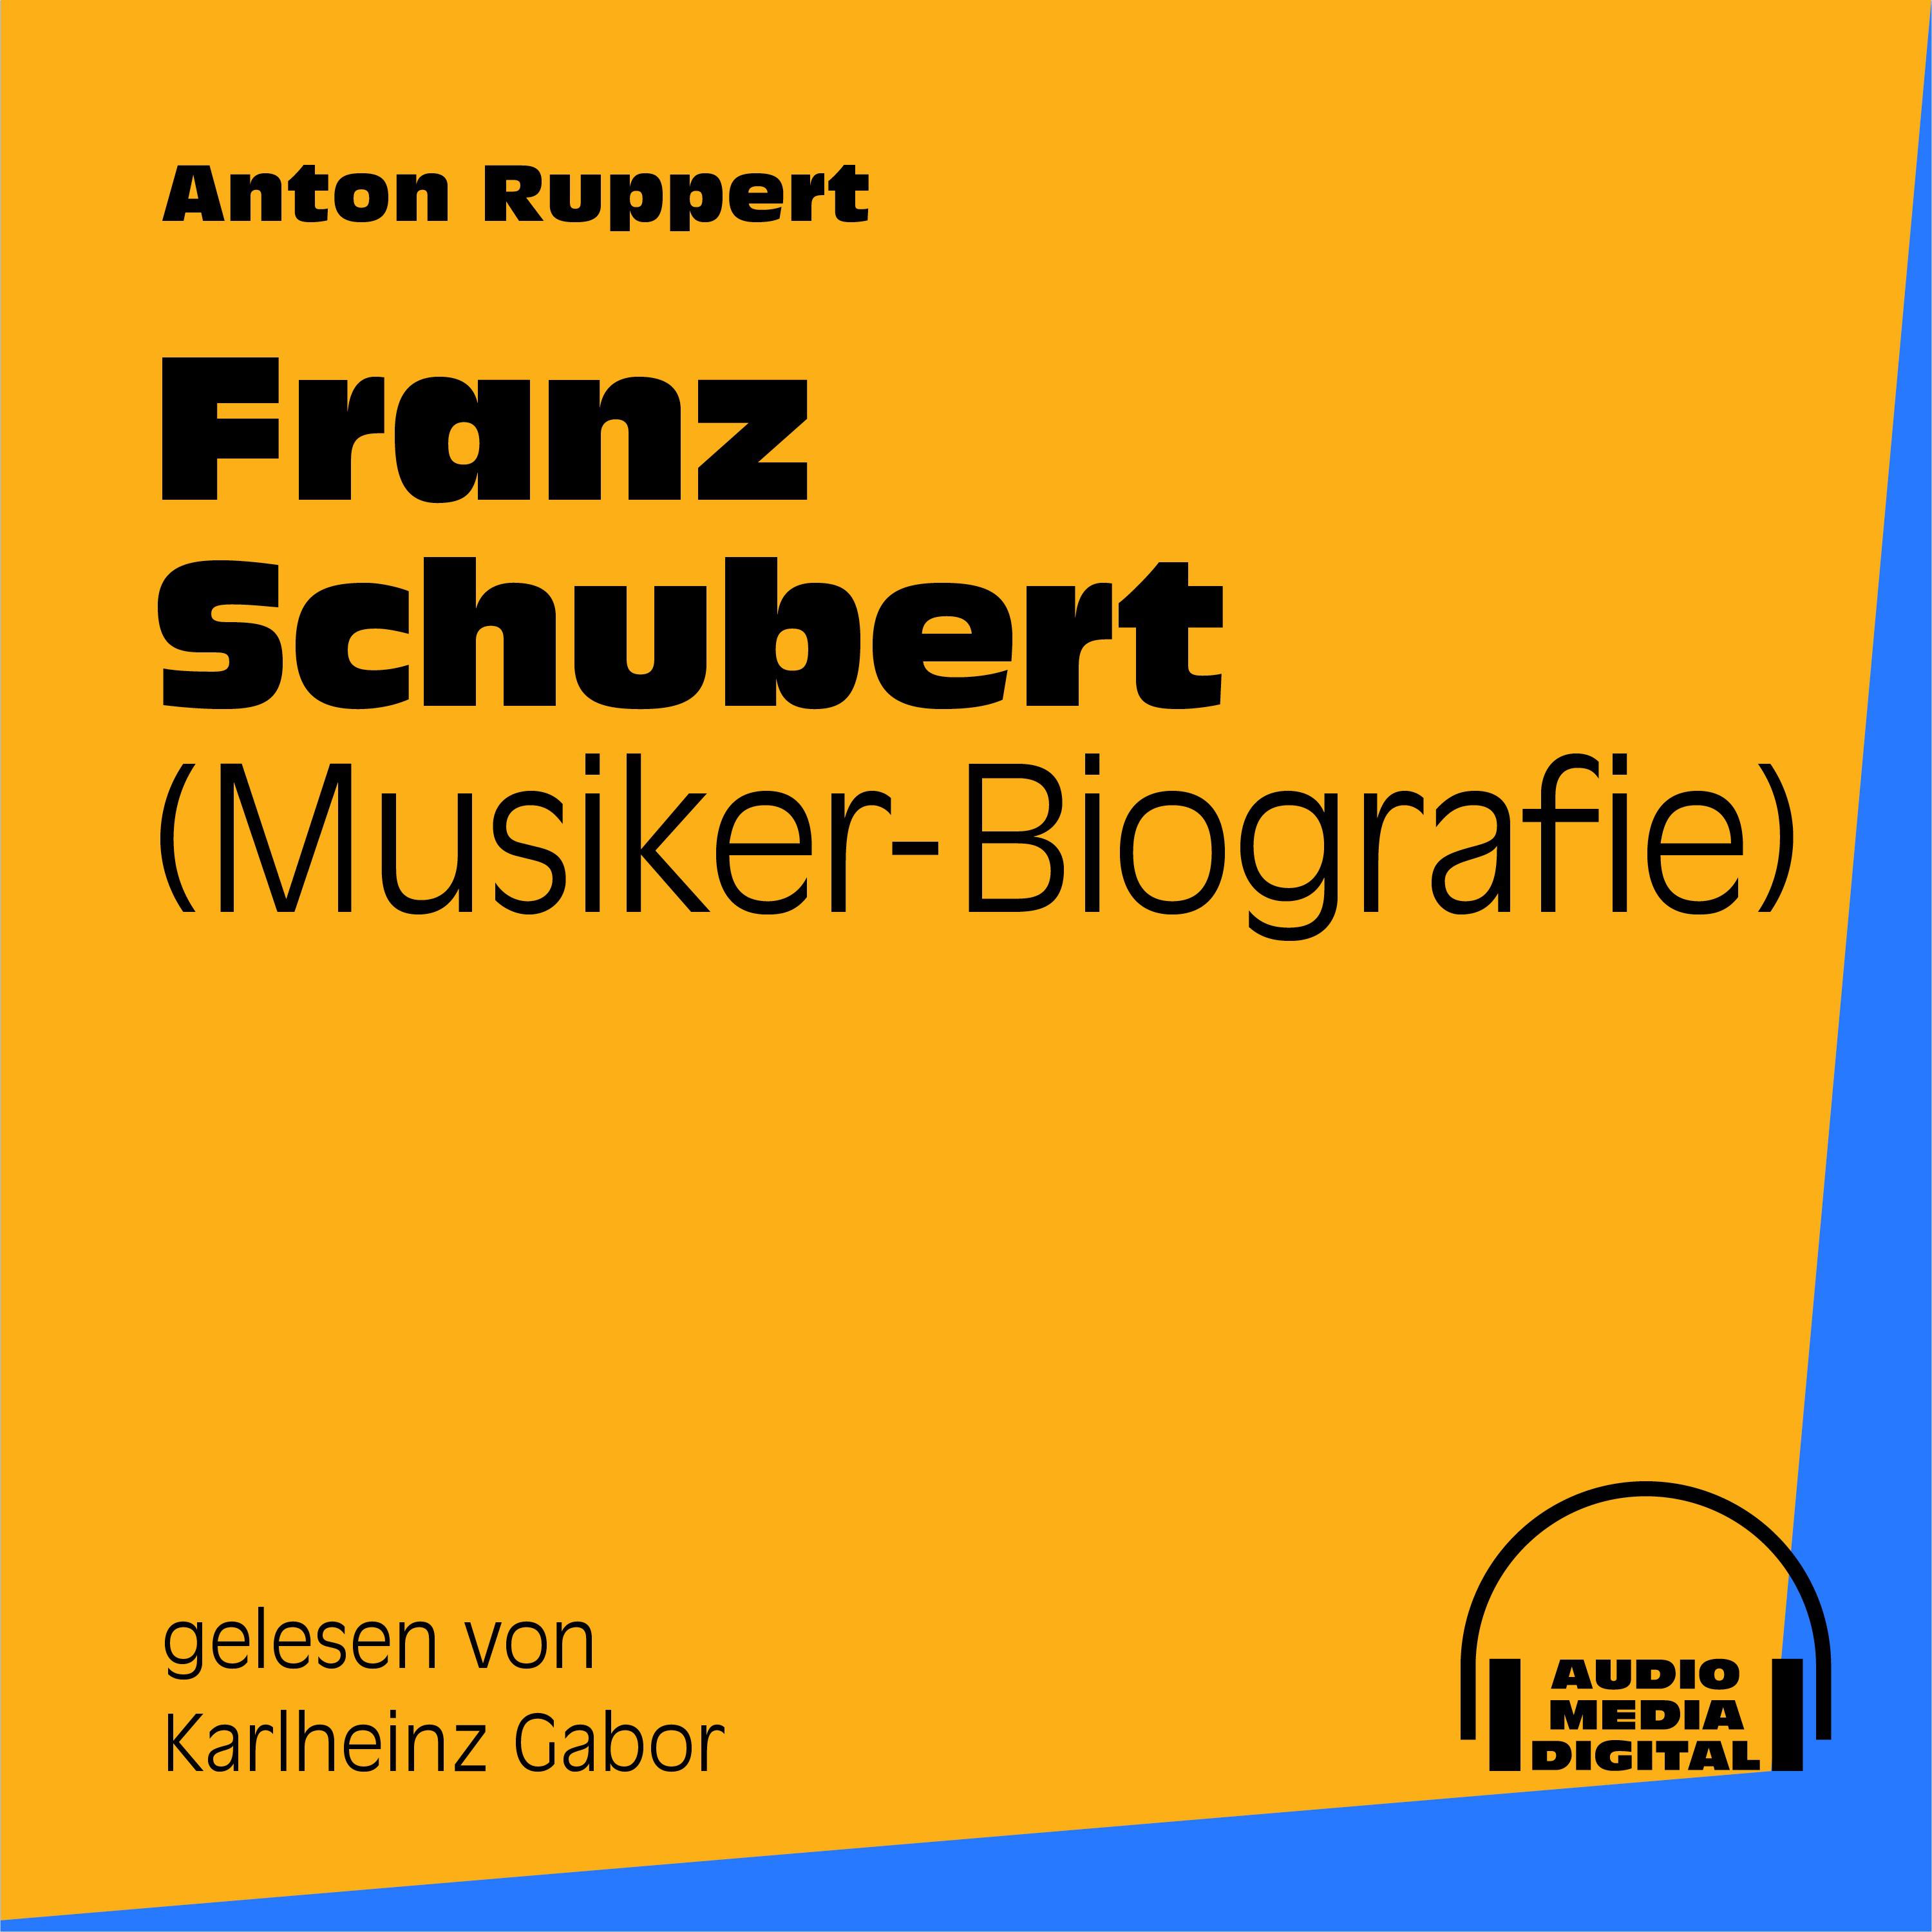 Teil 1: Franz Schubert